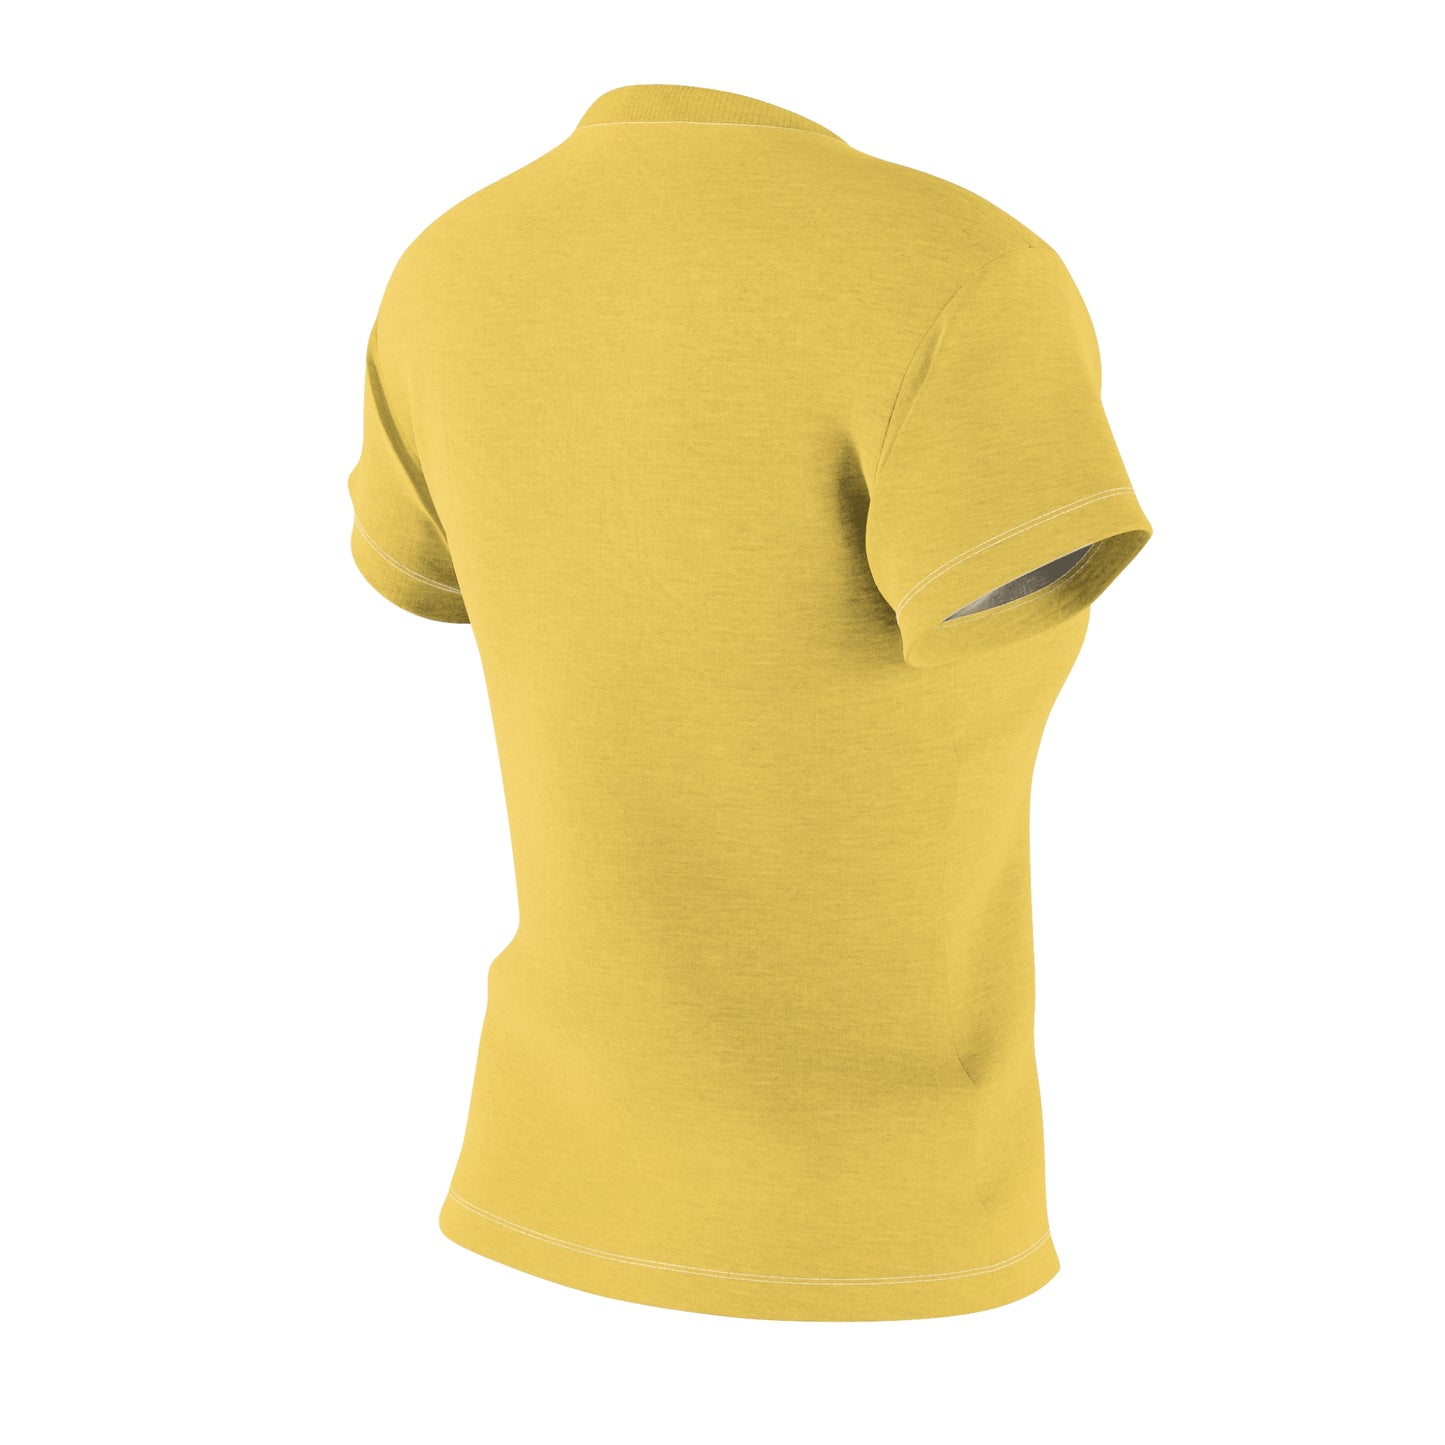 Perfect Tee Golden Sand Women's Classic Short Sleeve T-Shirt